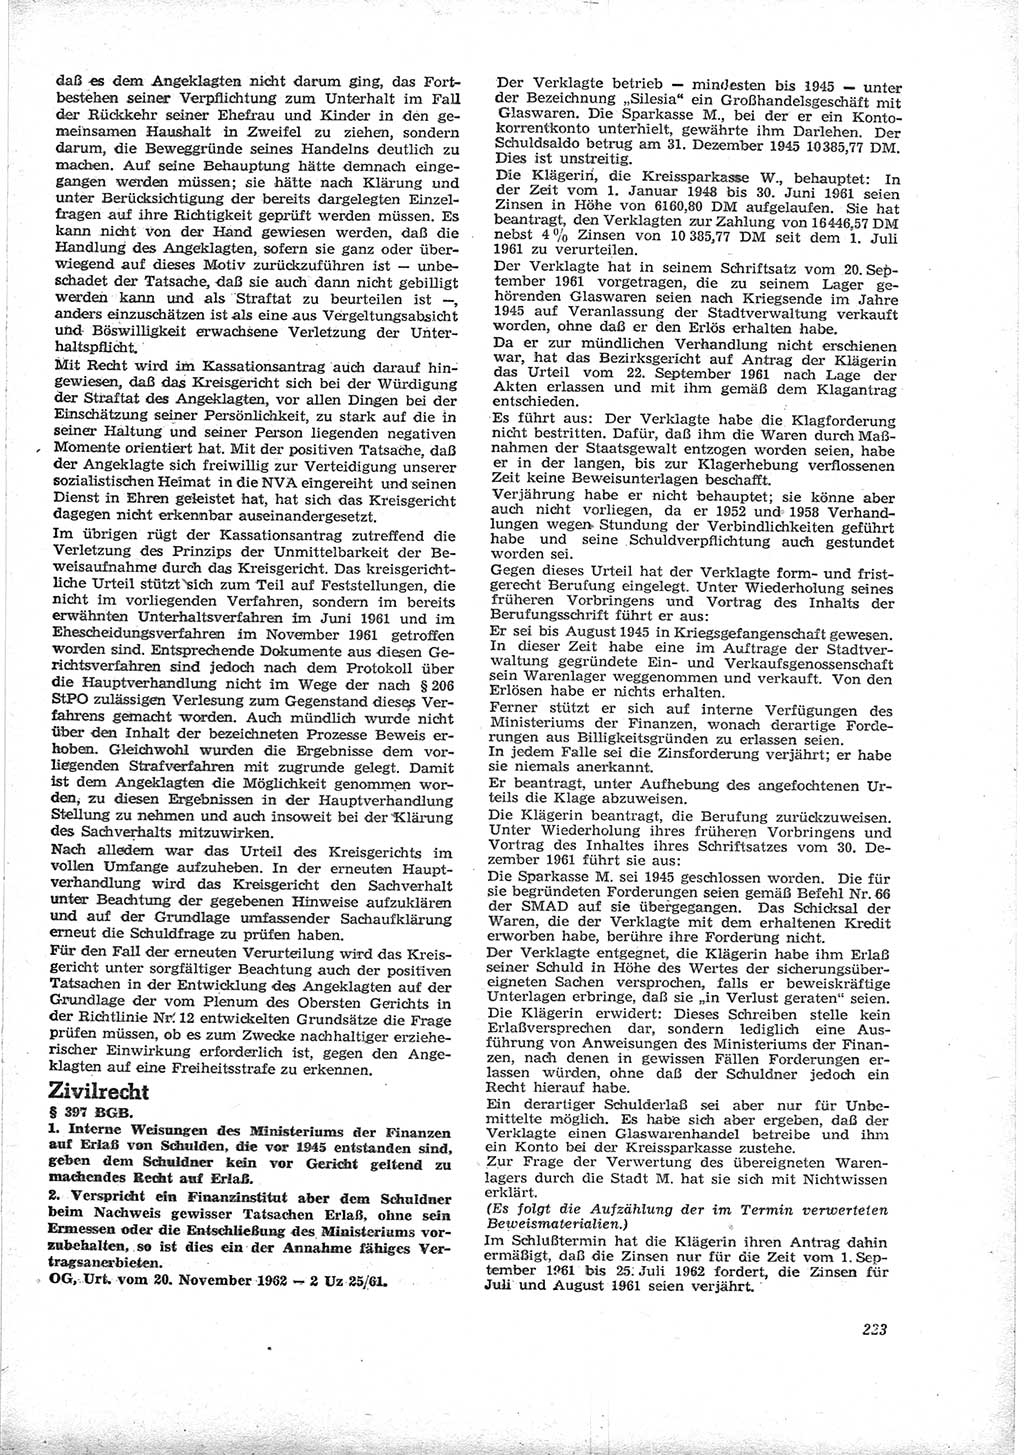 Neue Justiz (NJ), Zeitschrift für Recht und Rechtswissenschaft [Deutsche Demokratische Republik (DDR)], 17. Jahrgang 1963, Seite 223 (NJ DDR 1963, S. 223)